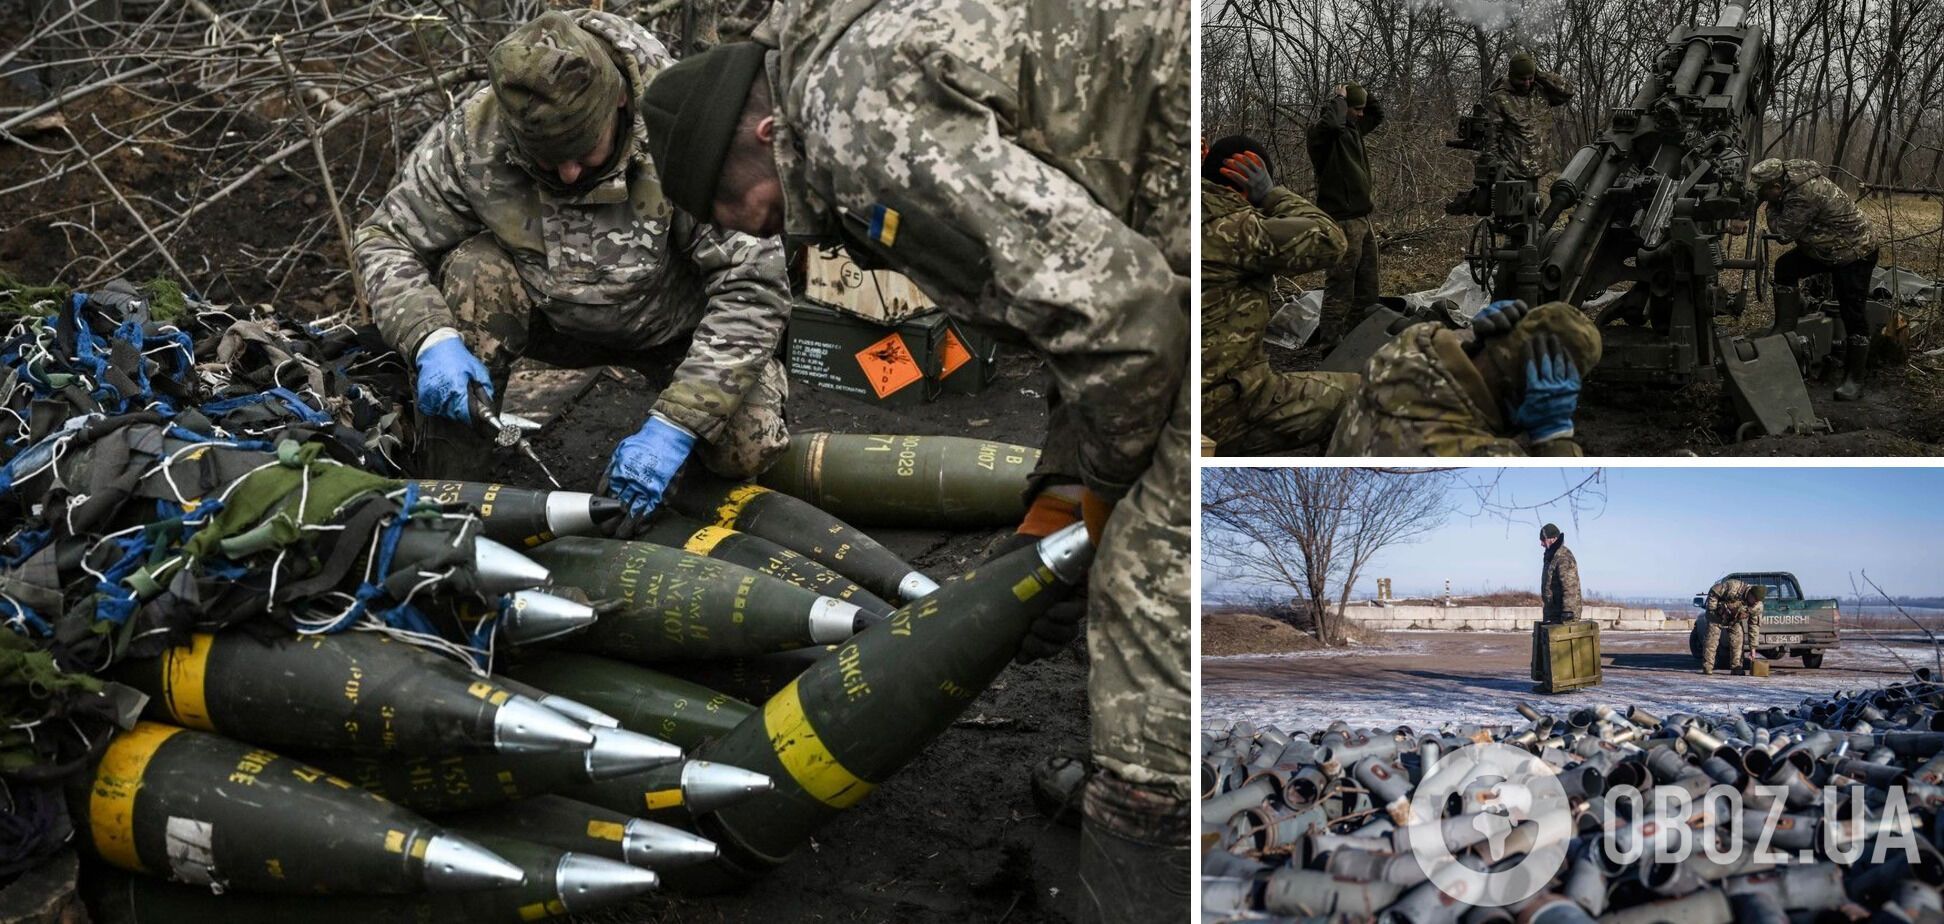 ЄС може затвердити план спільної закупівлі боєприпасів для України вже наступного тижня – Bloomberg